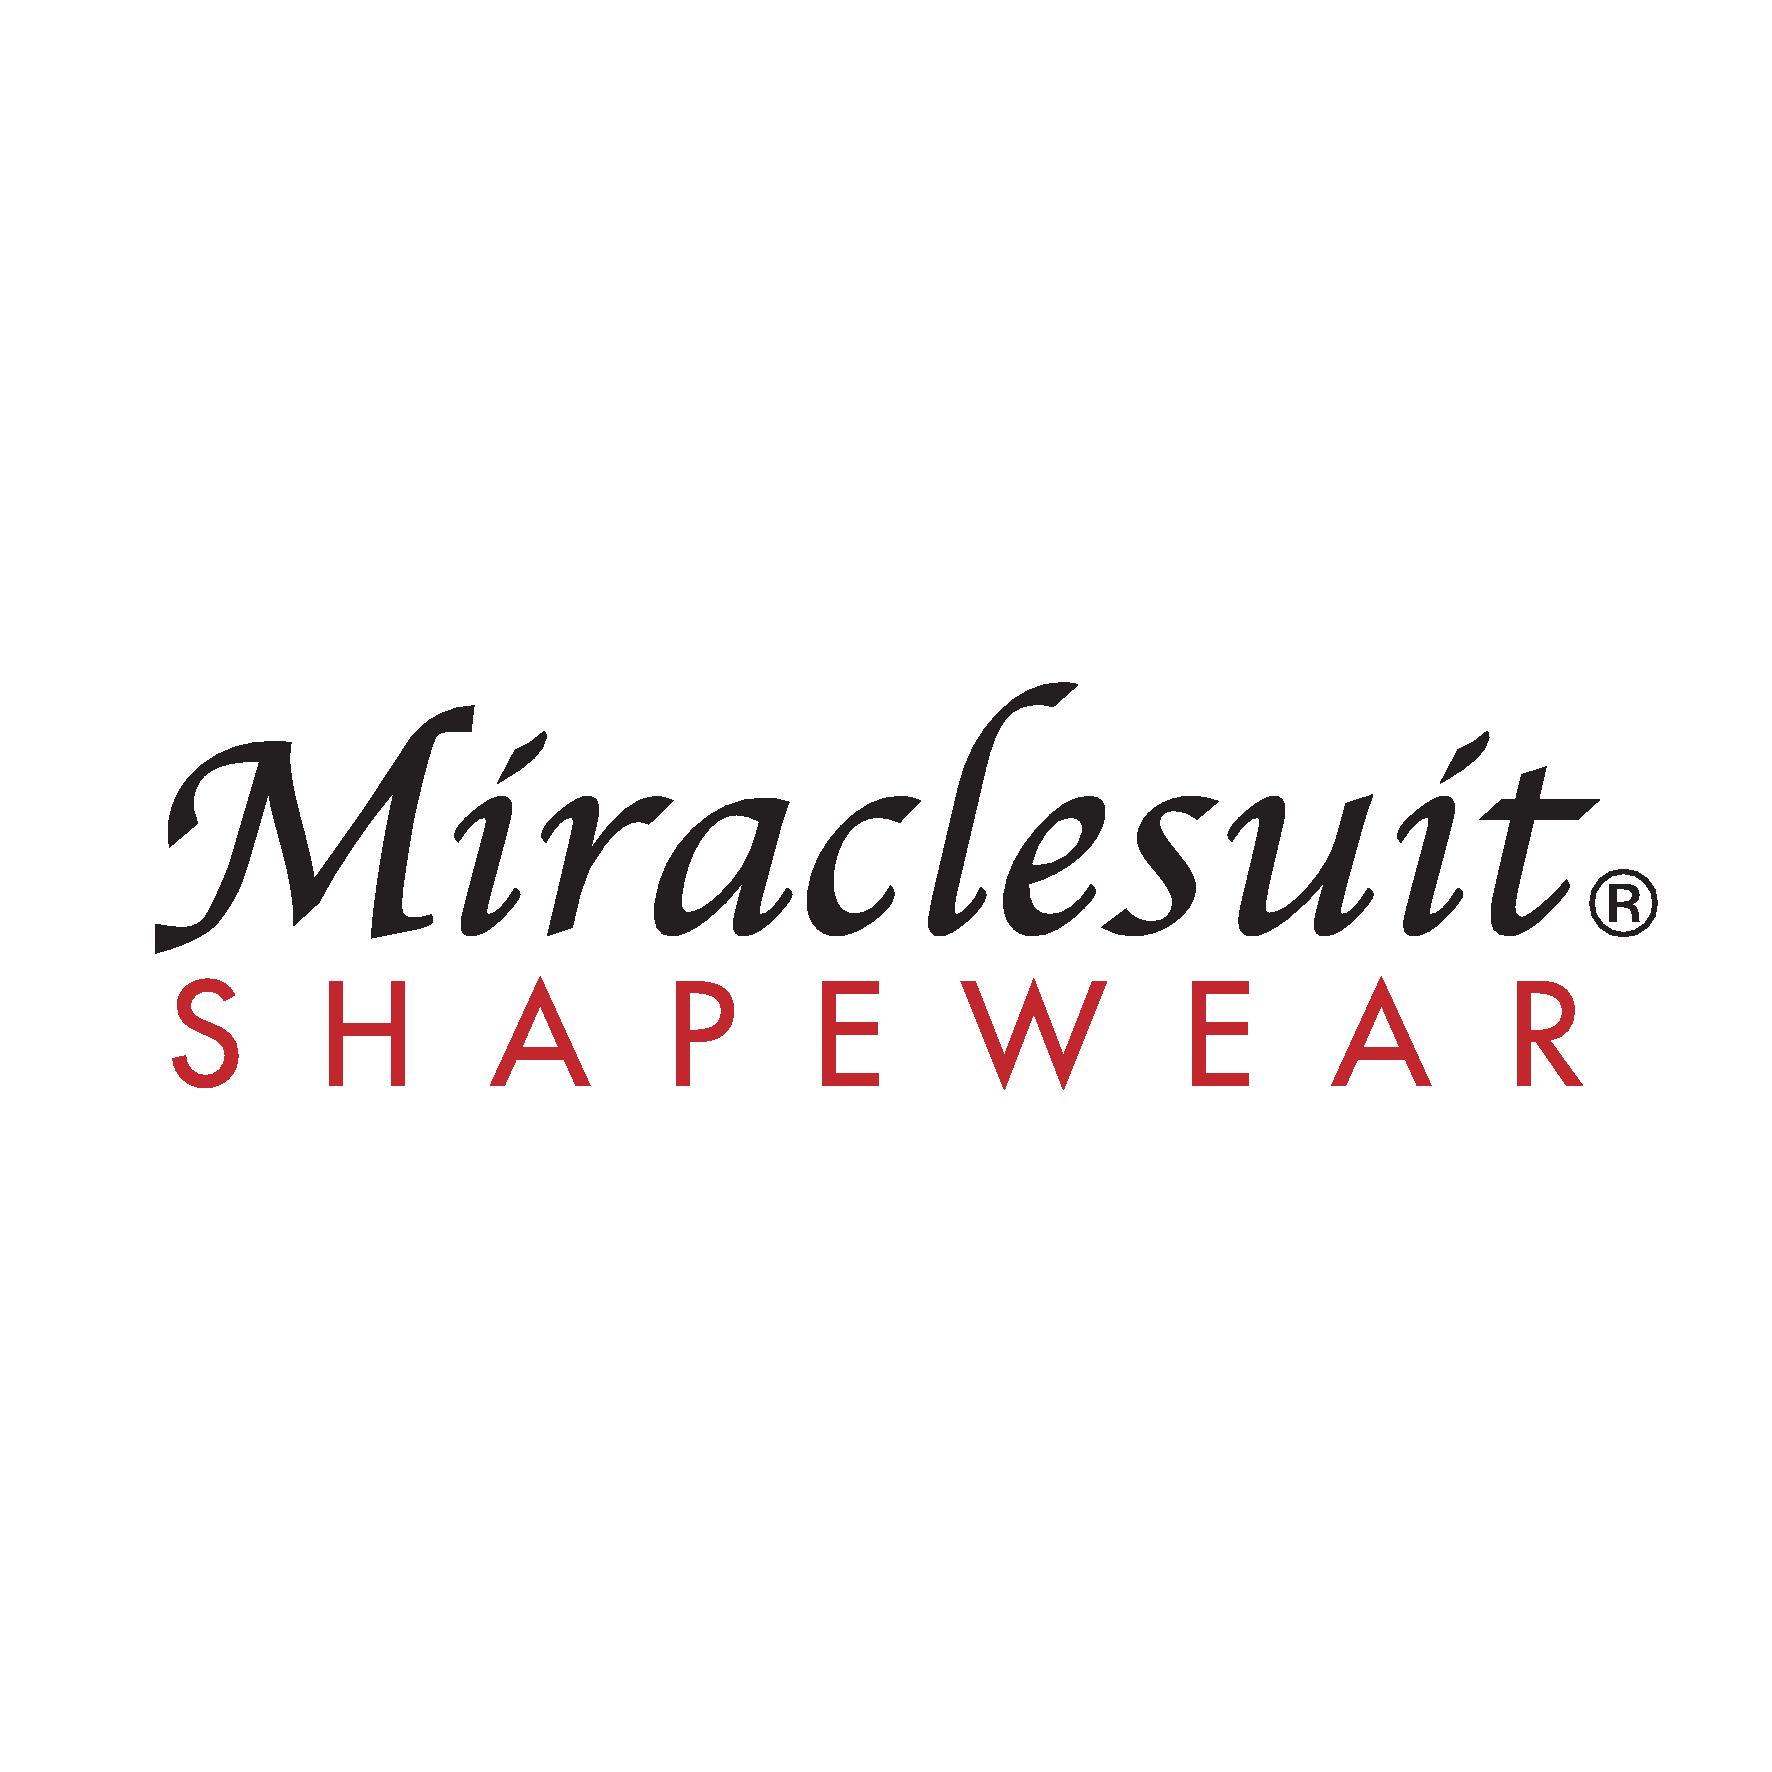 Miraclesuit (shapewear) logo